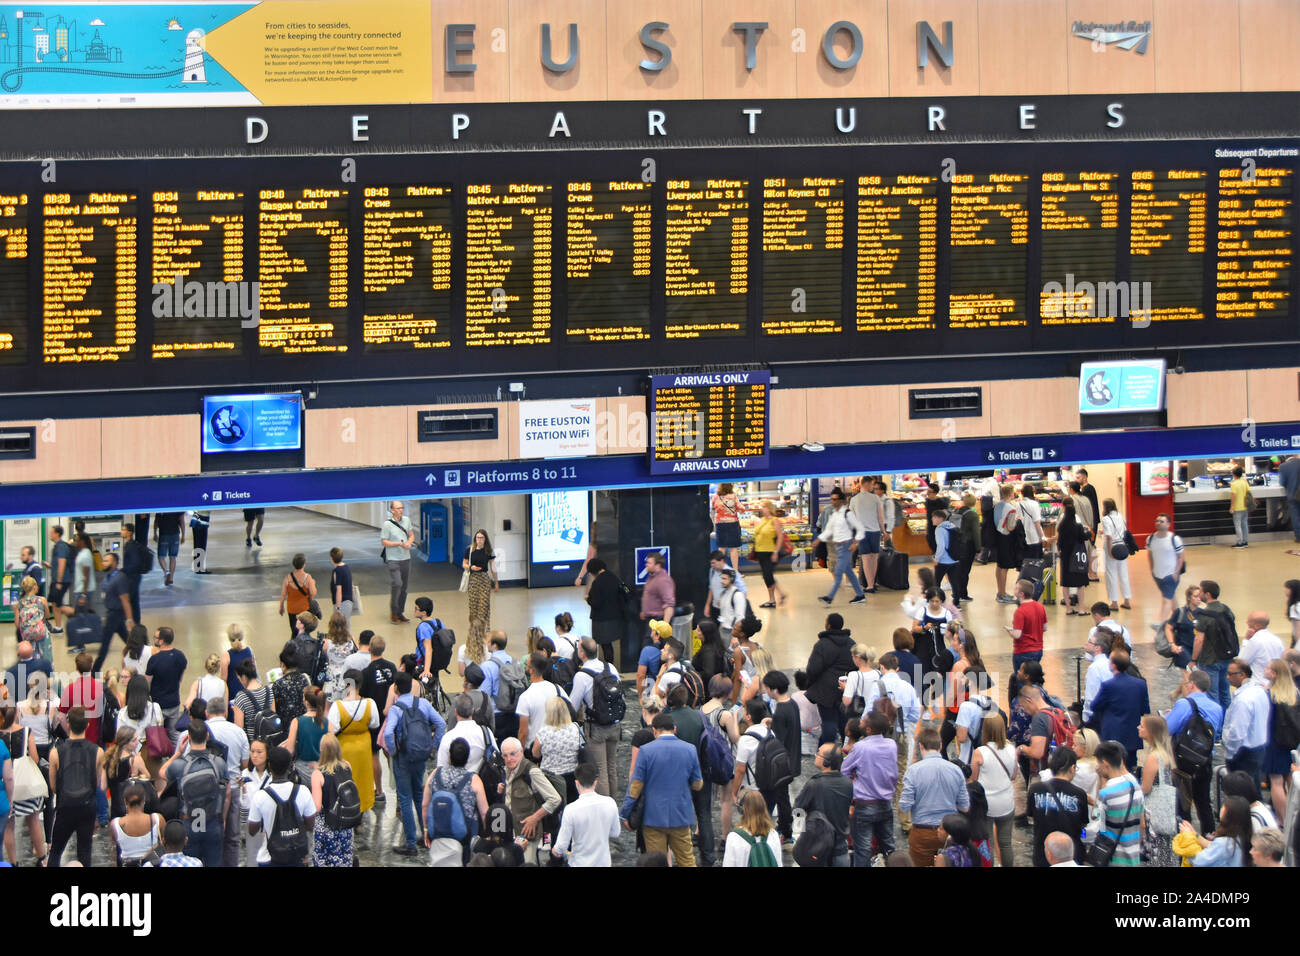 Vue de dessus en regardant l'intérieur du hall de la gare ferroviaire d'Euston avec affichage des départs des trains de passagers et voyage d 'information London UK Banque D'Images